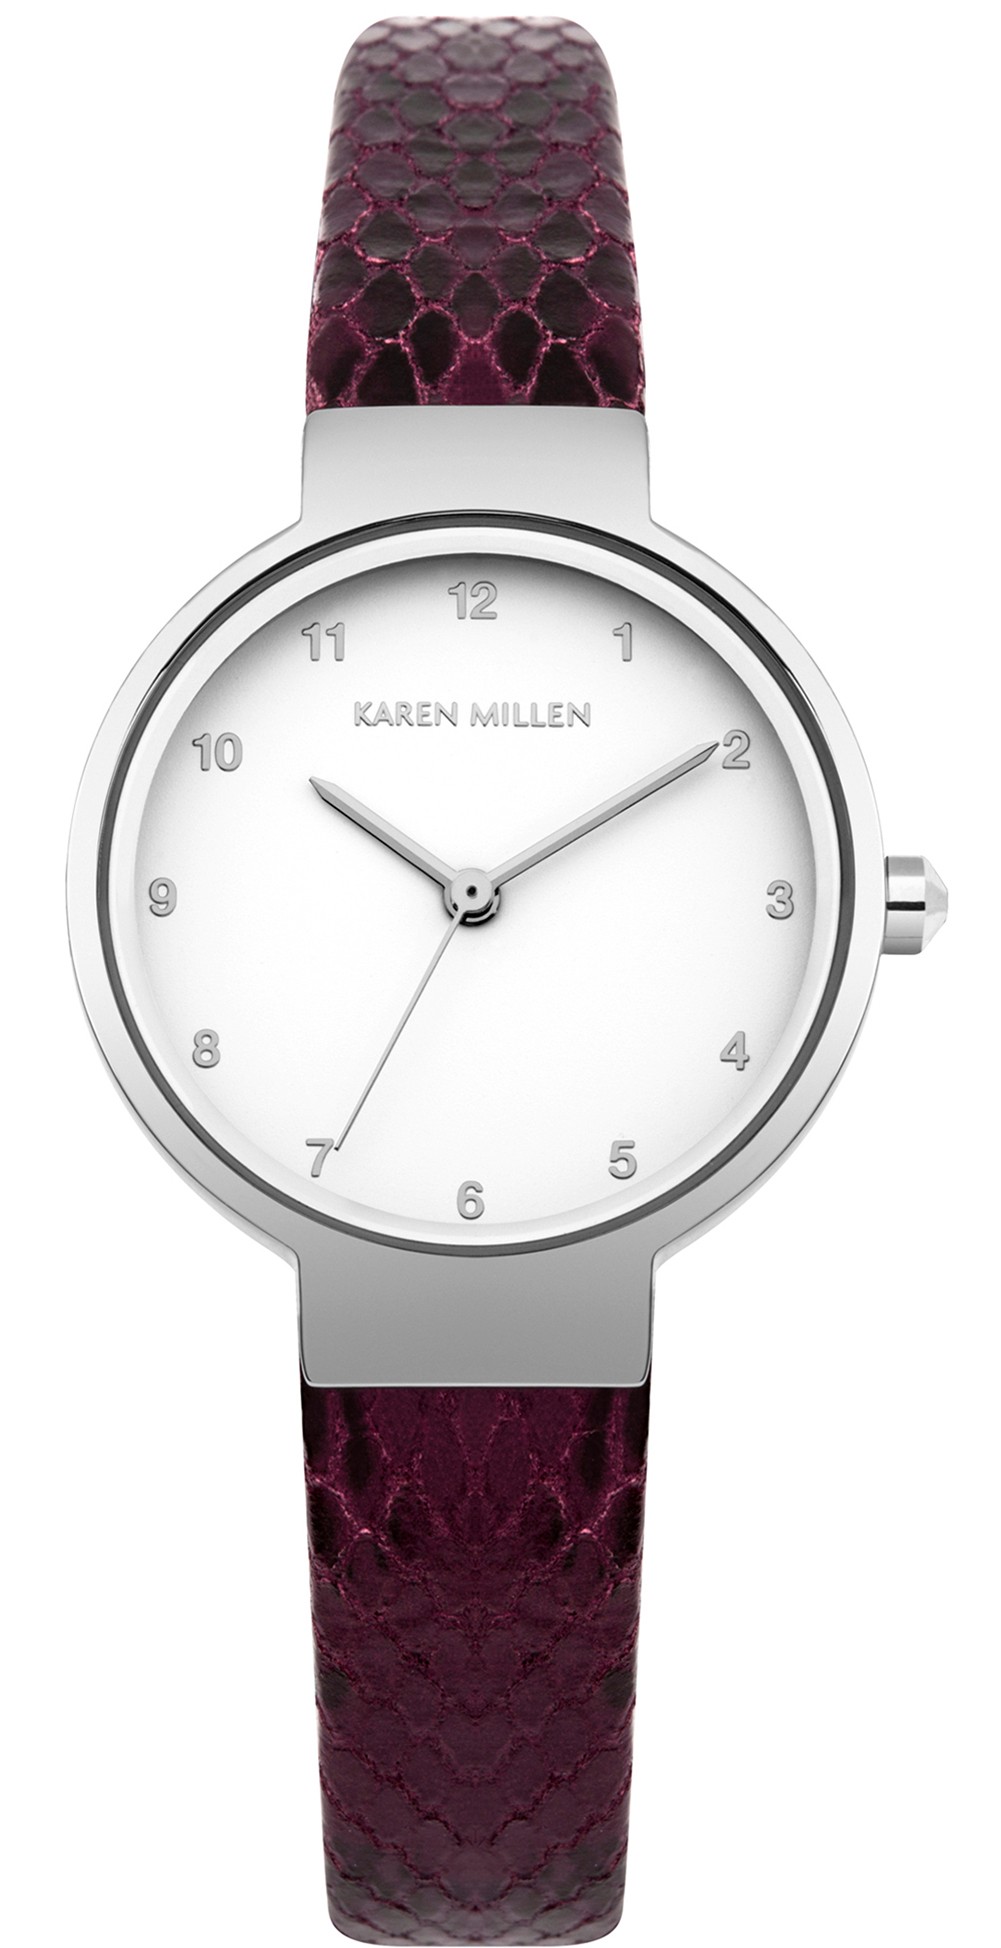 KAREN MILLEN Ladies Watch White leather strap RRP£159 NEW IDEAL GIFT! (KM46  | eBay